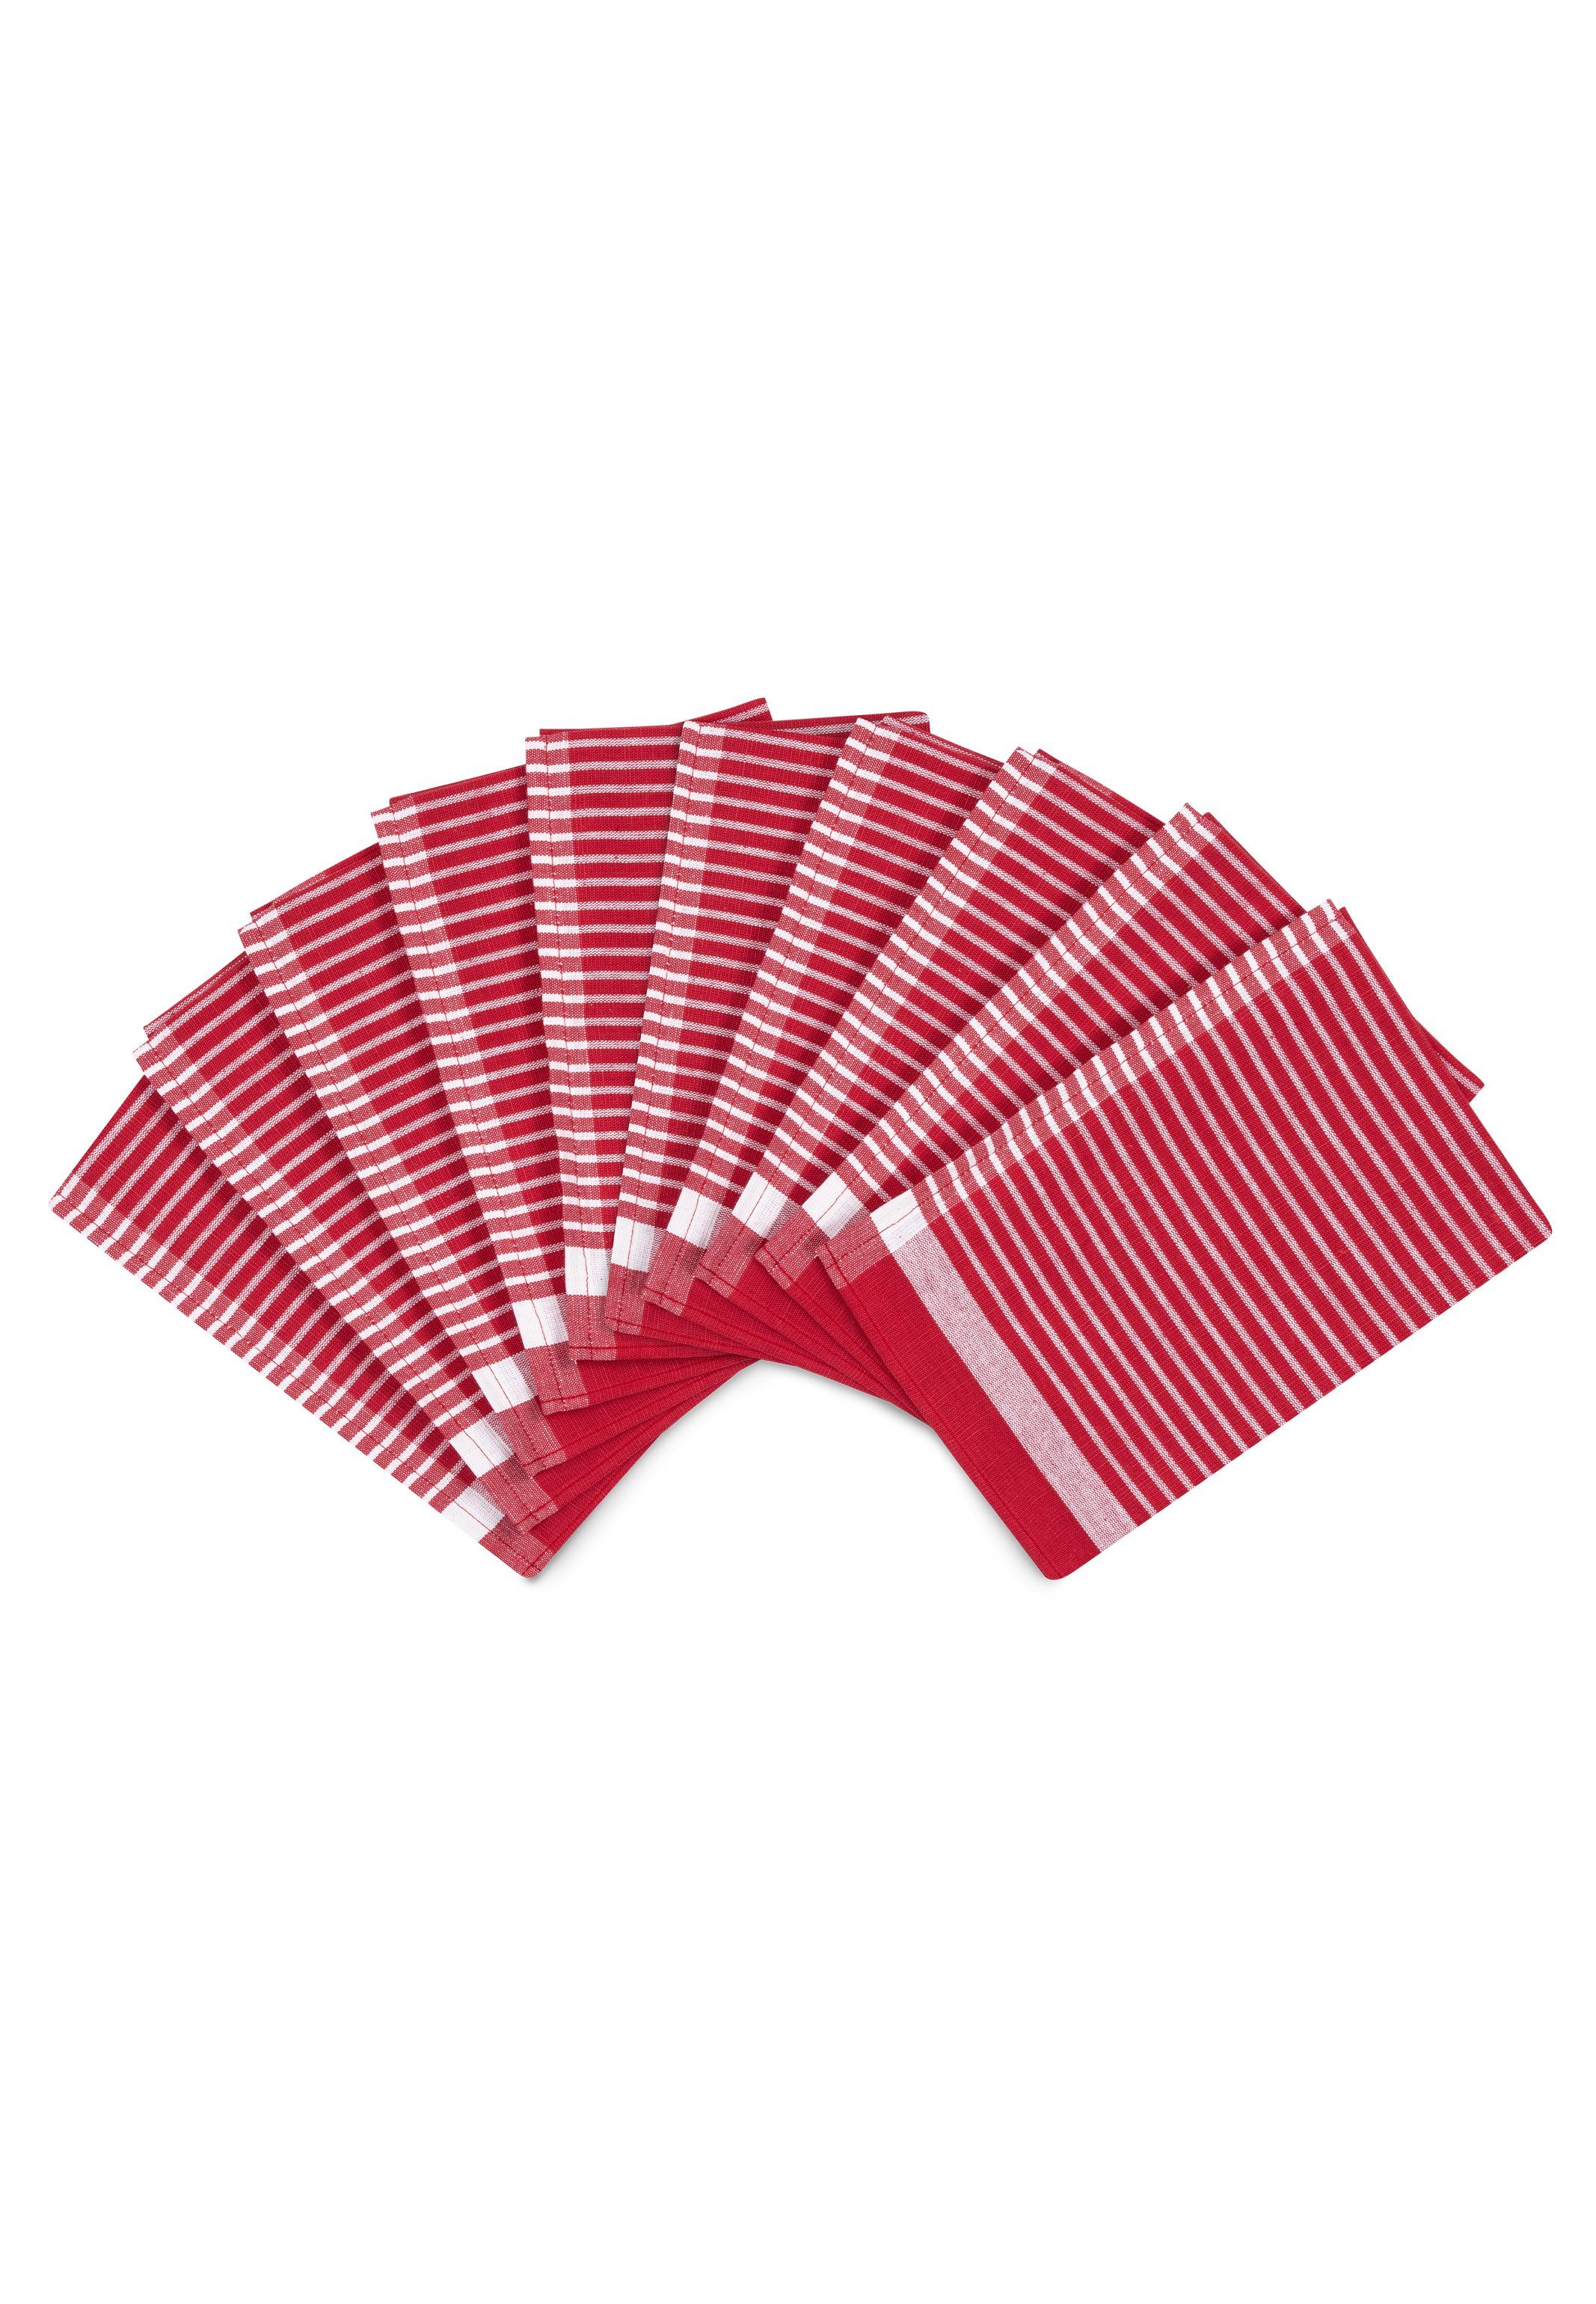 ROSS Geschirrtuch Exclusiv - Halbleinen - Streifen, (Spar-Set, 10-tlg., 10 X Geschirrtuch (50 X 70cm), 10 X Geschirrtuch im Set - Baumwolle - Strapazierfähig Rot